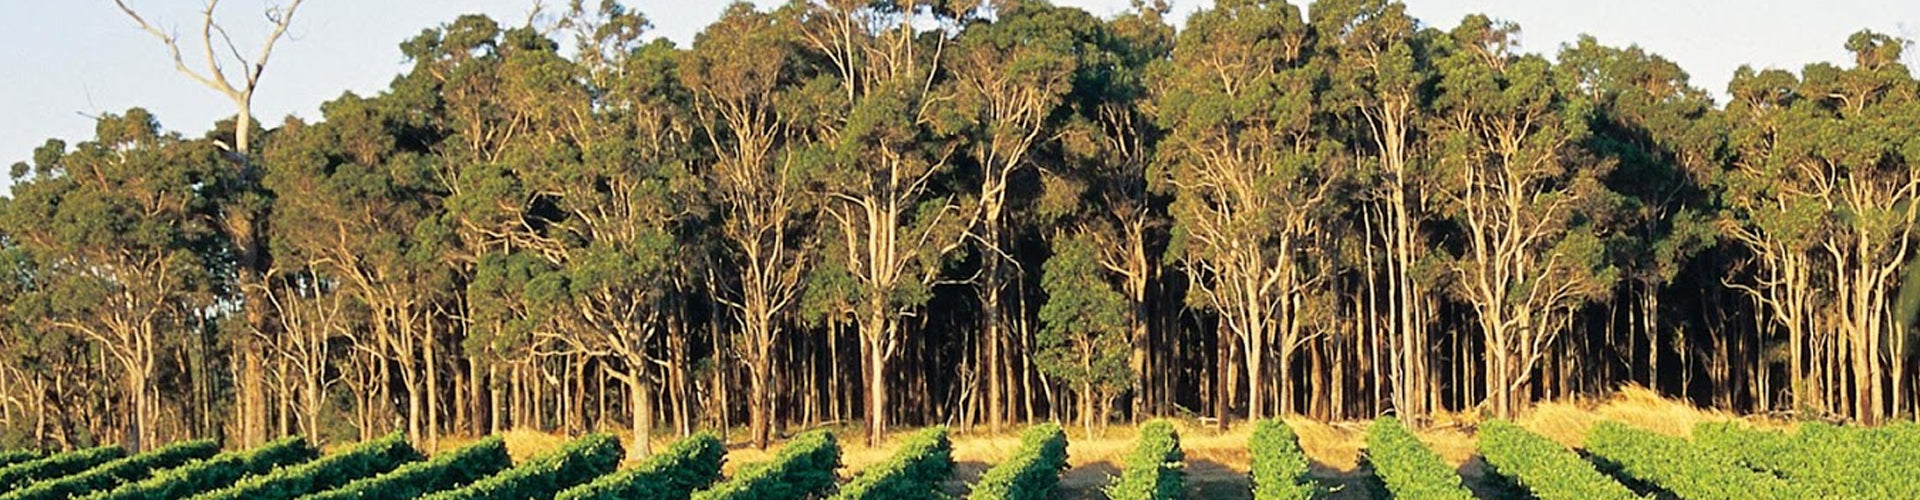 Karri Trees behind vineyard in Pemberton, Western Australia